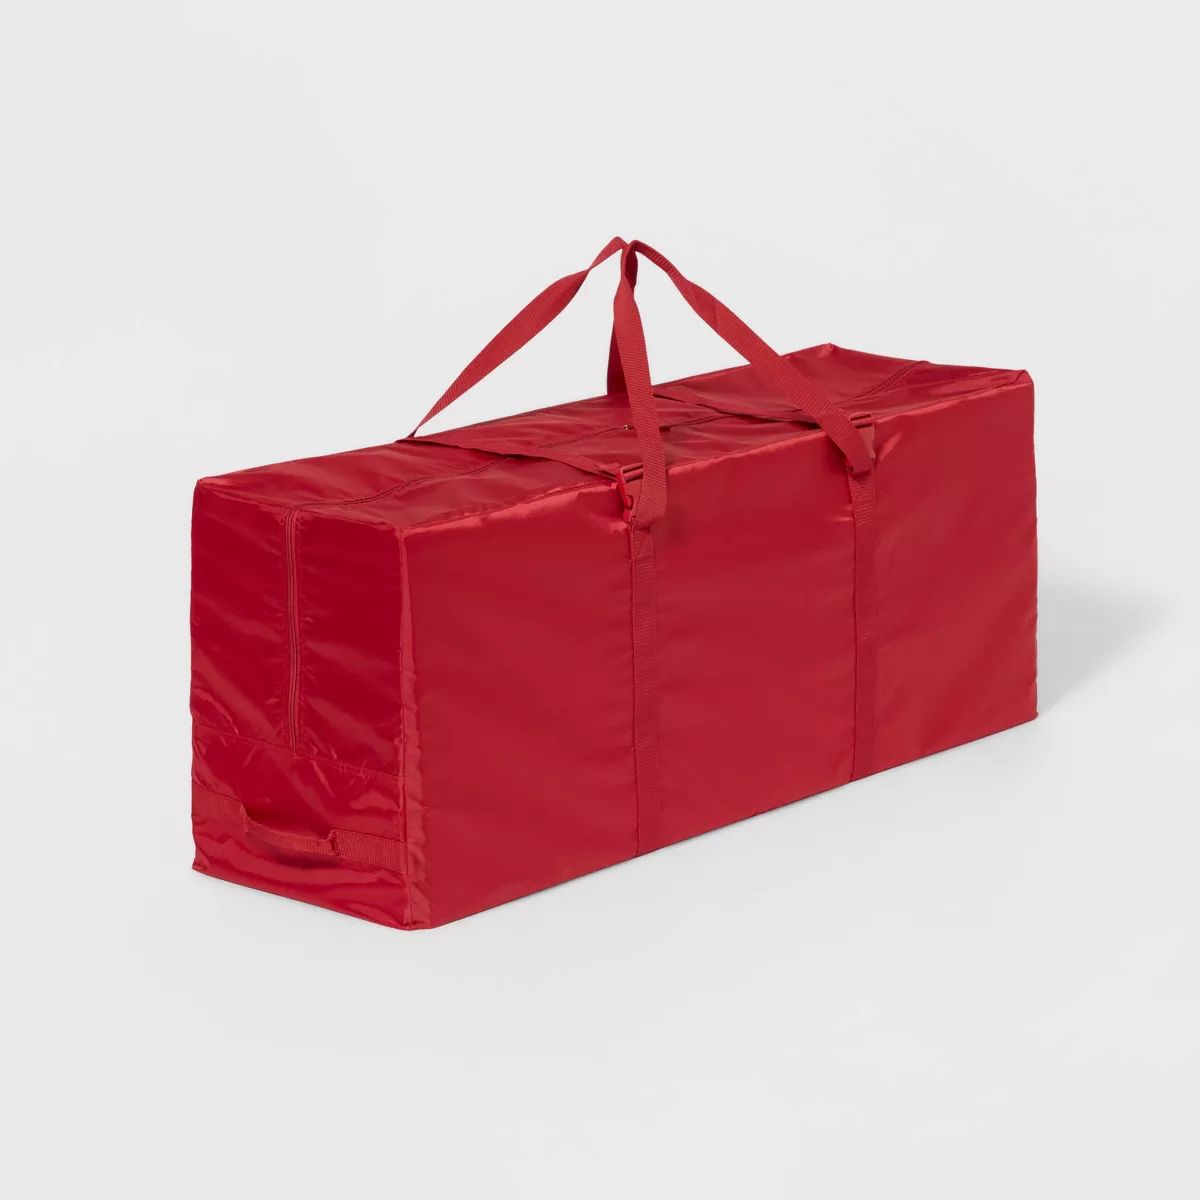 Christmas Tree Storage Bag up to 7.5ft Red - Wondershop™ | Target